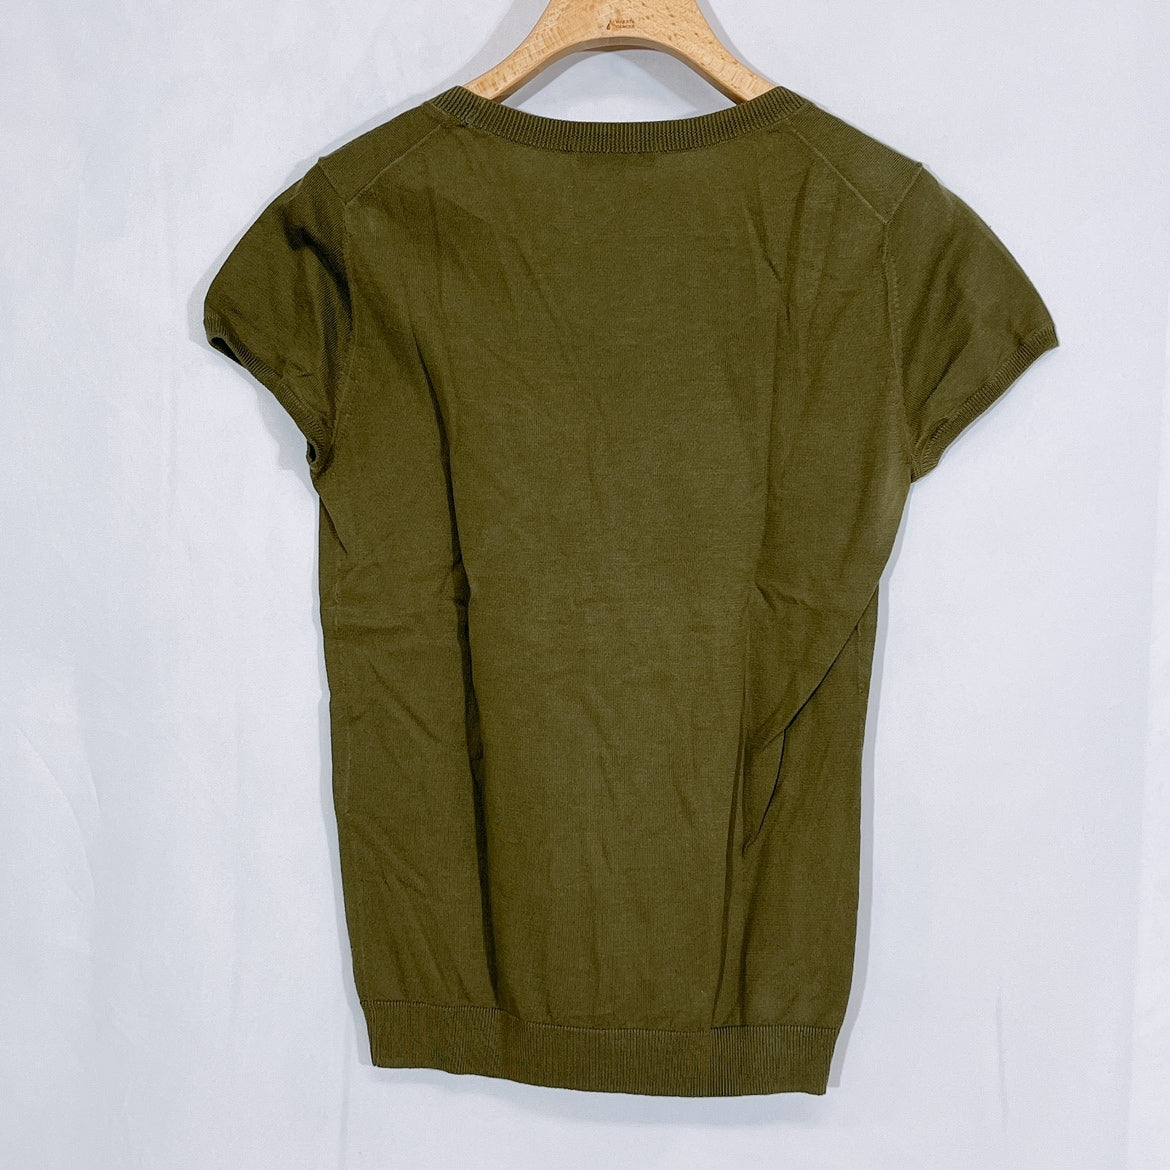 レディース2 M theory Tシャツ カーキー 深緑 半袖 薄手 Uネック シンプル 無地 フェミニン セオリー 【13082】